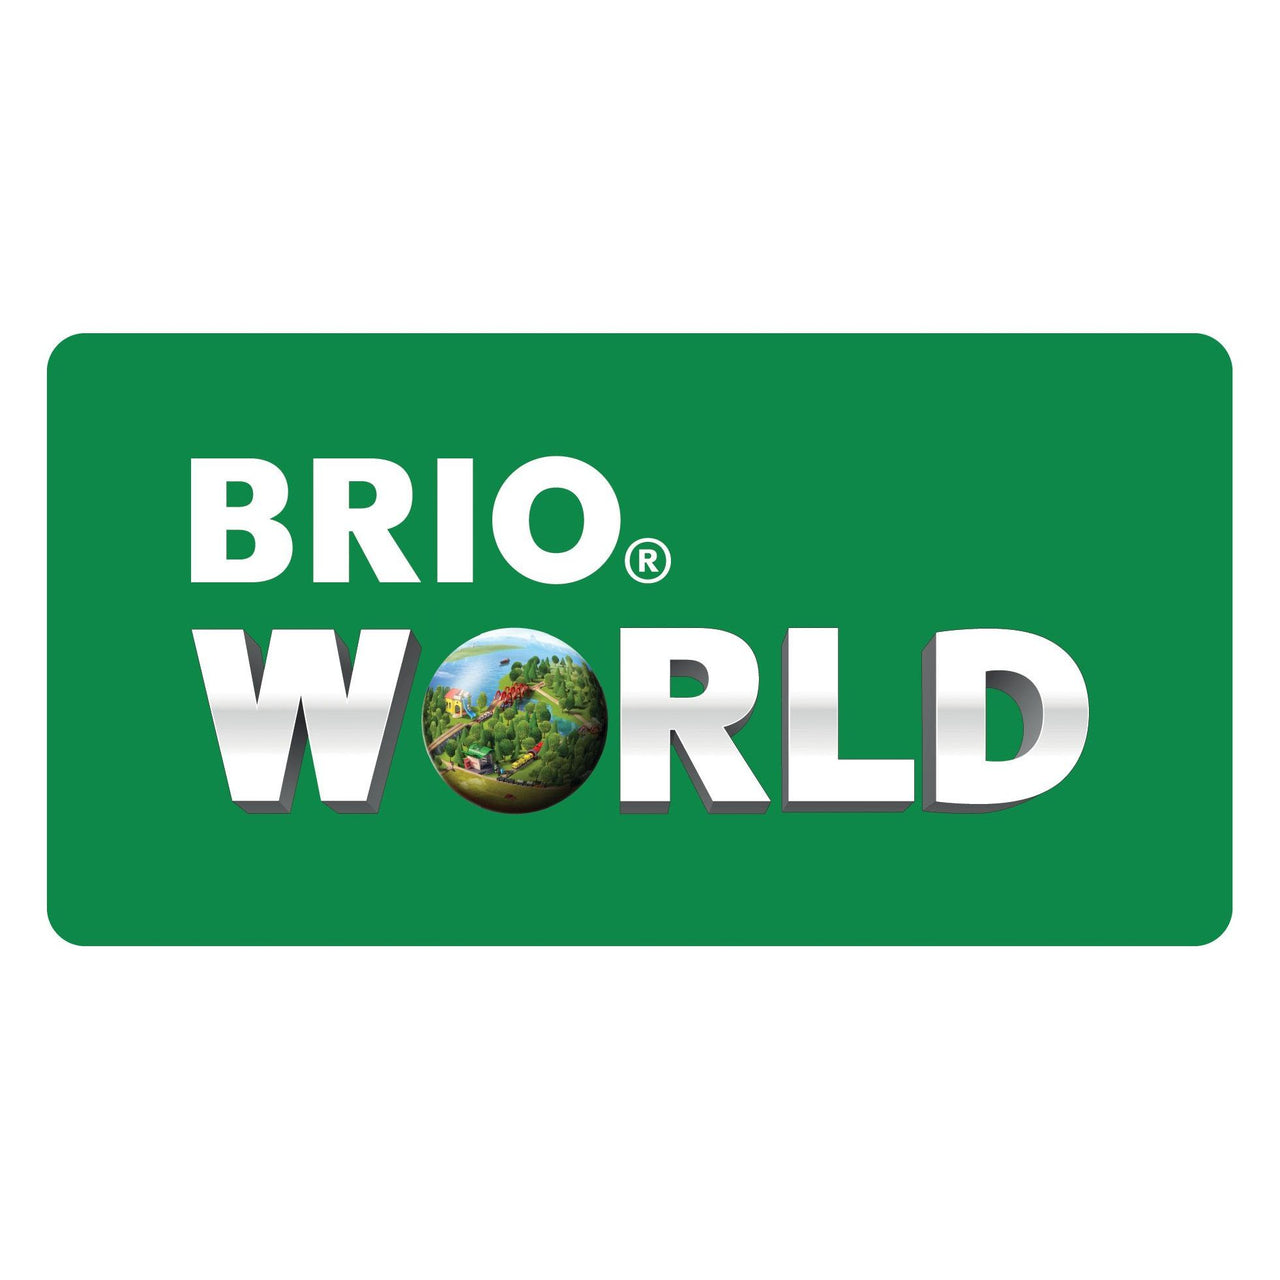 Brio Tractor with Load BRIO